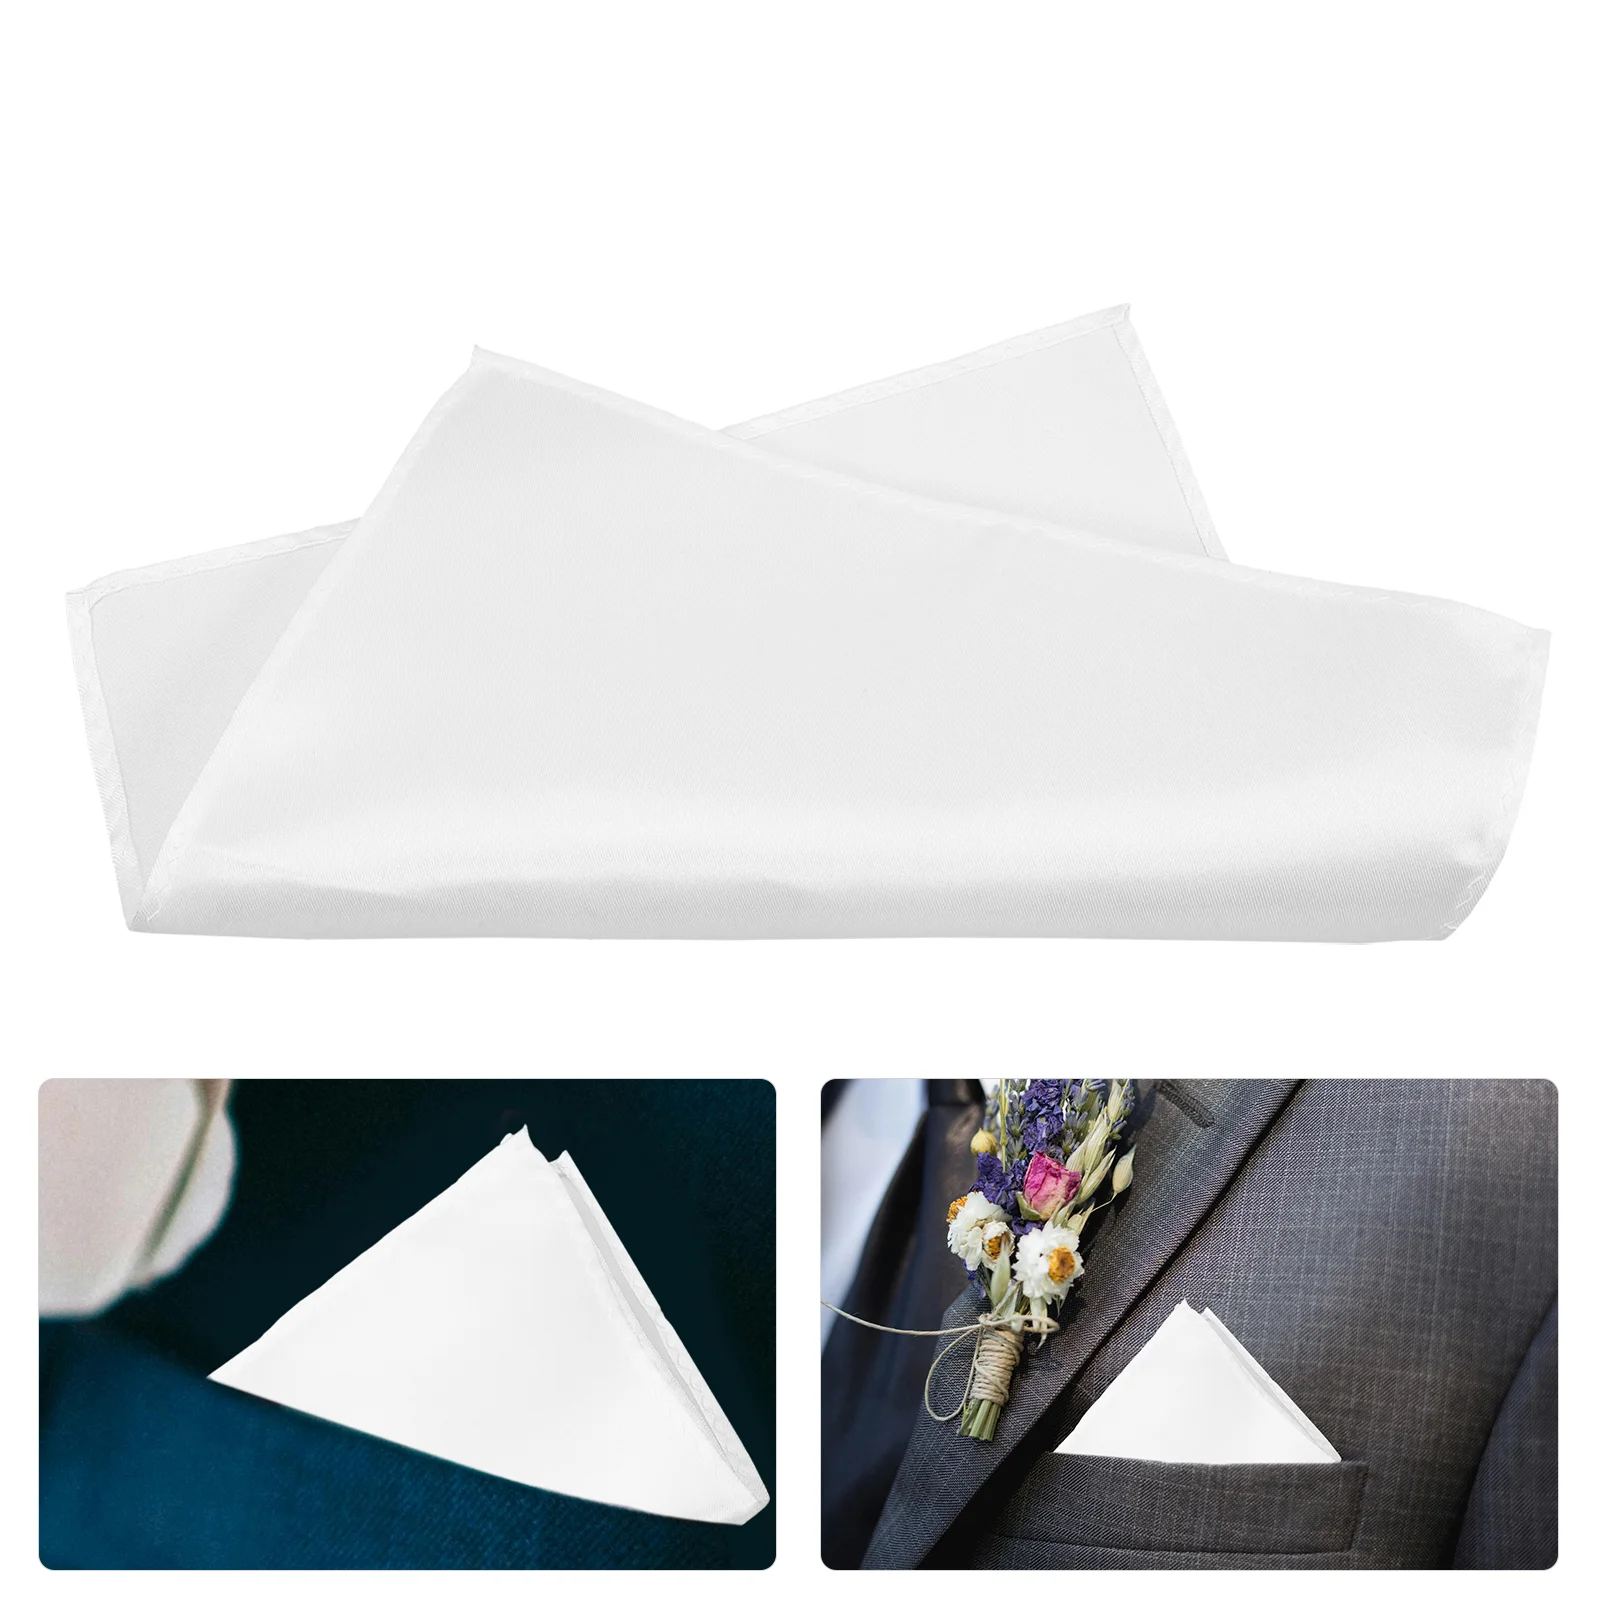 

6 Pcs Pocket Square Handkerchief Handkerchiefs for Men Squares Suit Gentlemen Dress